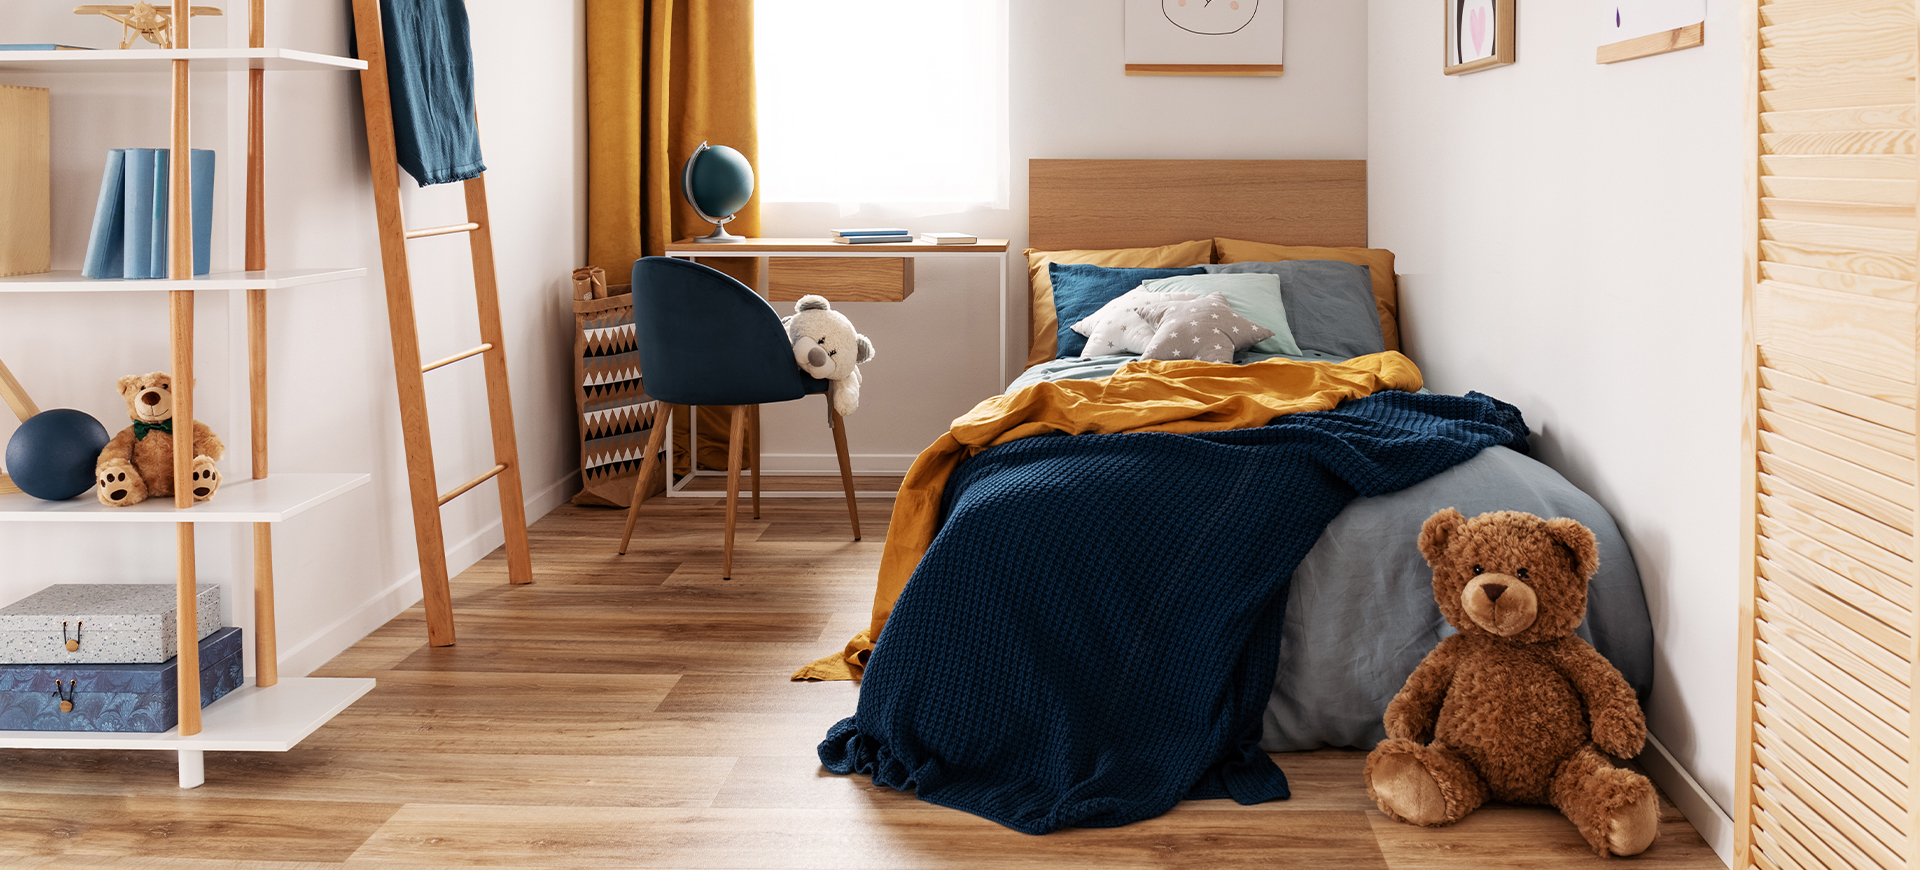 Blau-gelb eingerichtetes Jugendzimmer mit maßgefertigten Möbelstücken vom Schreiner